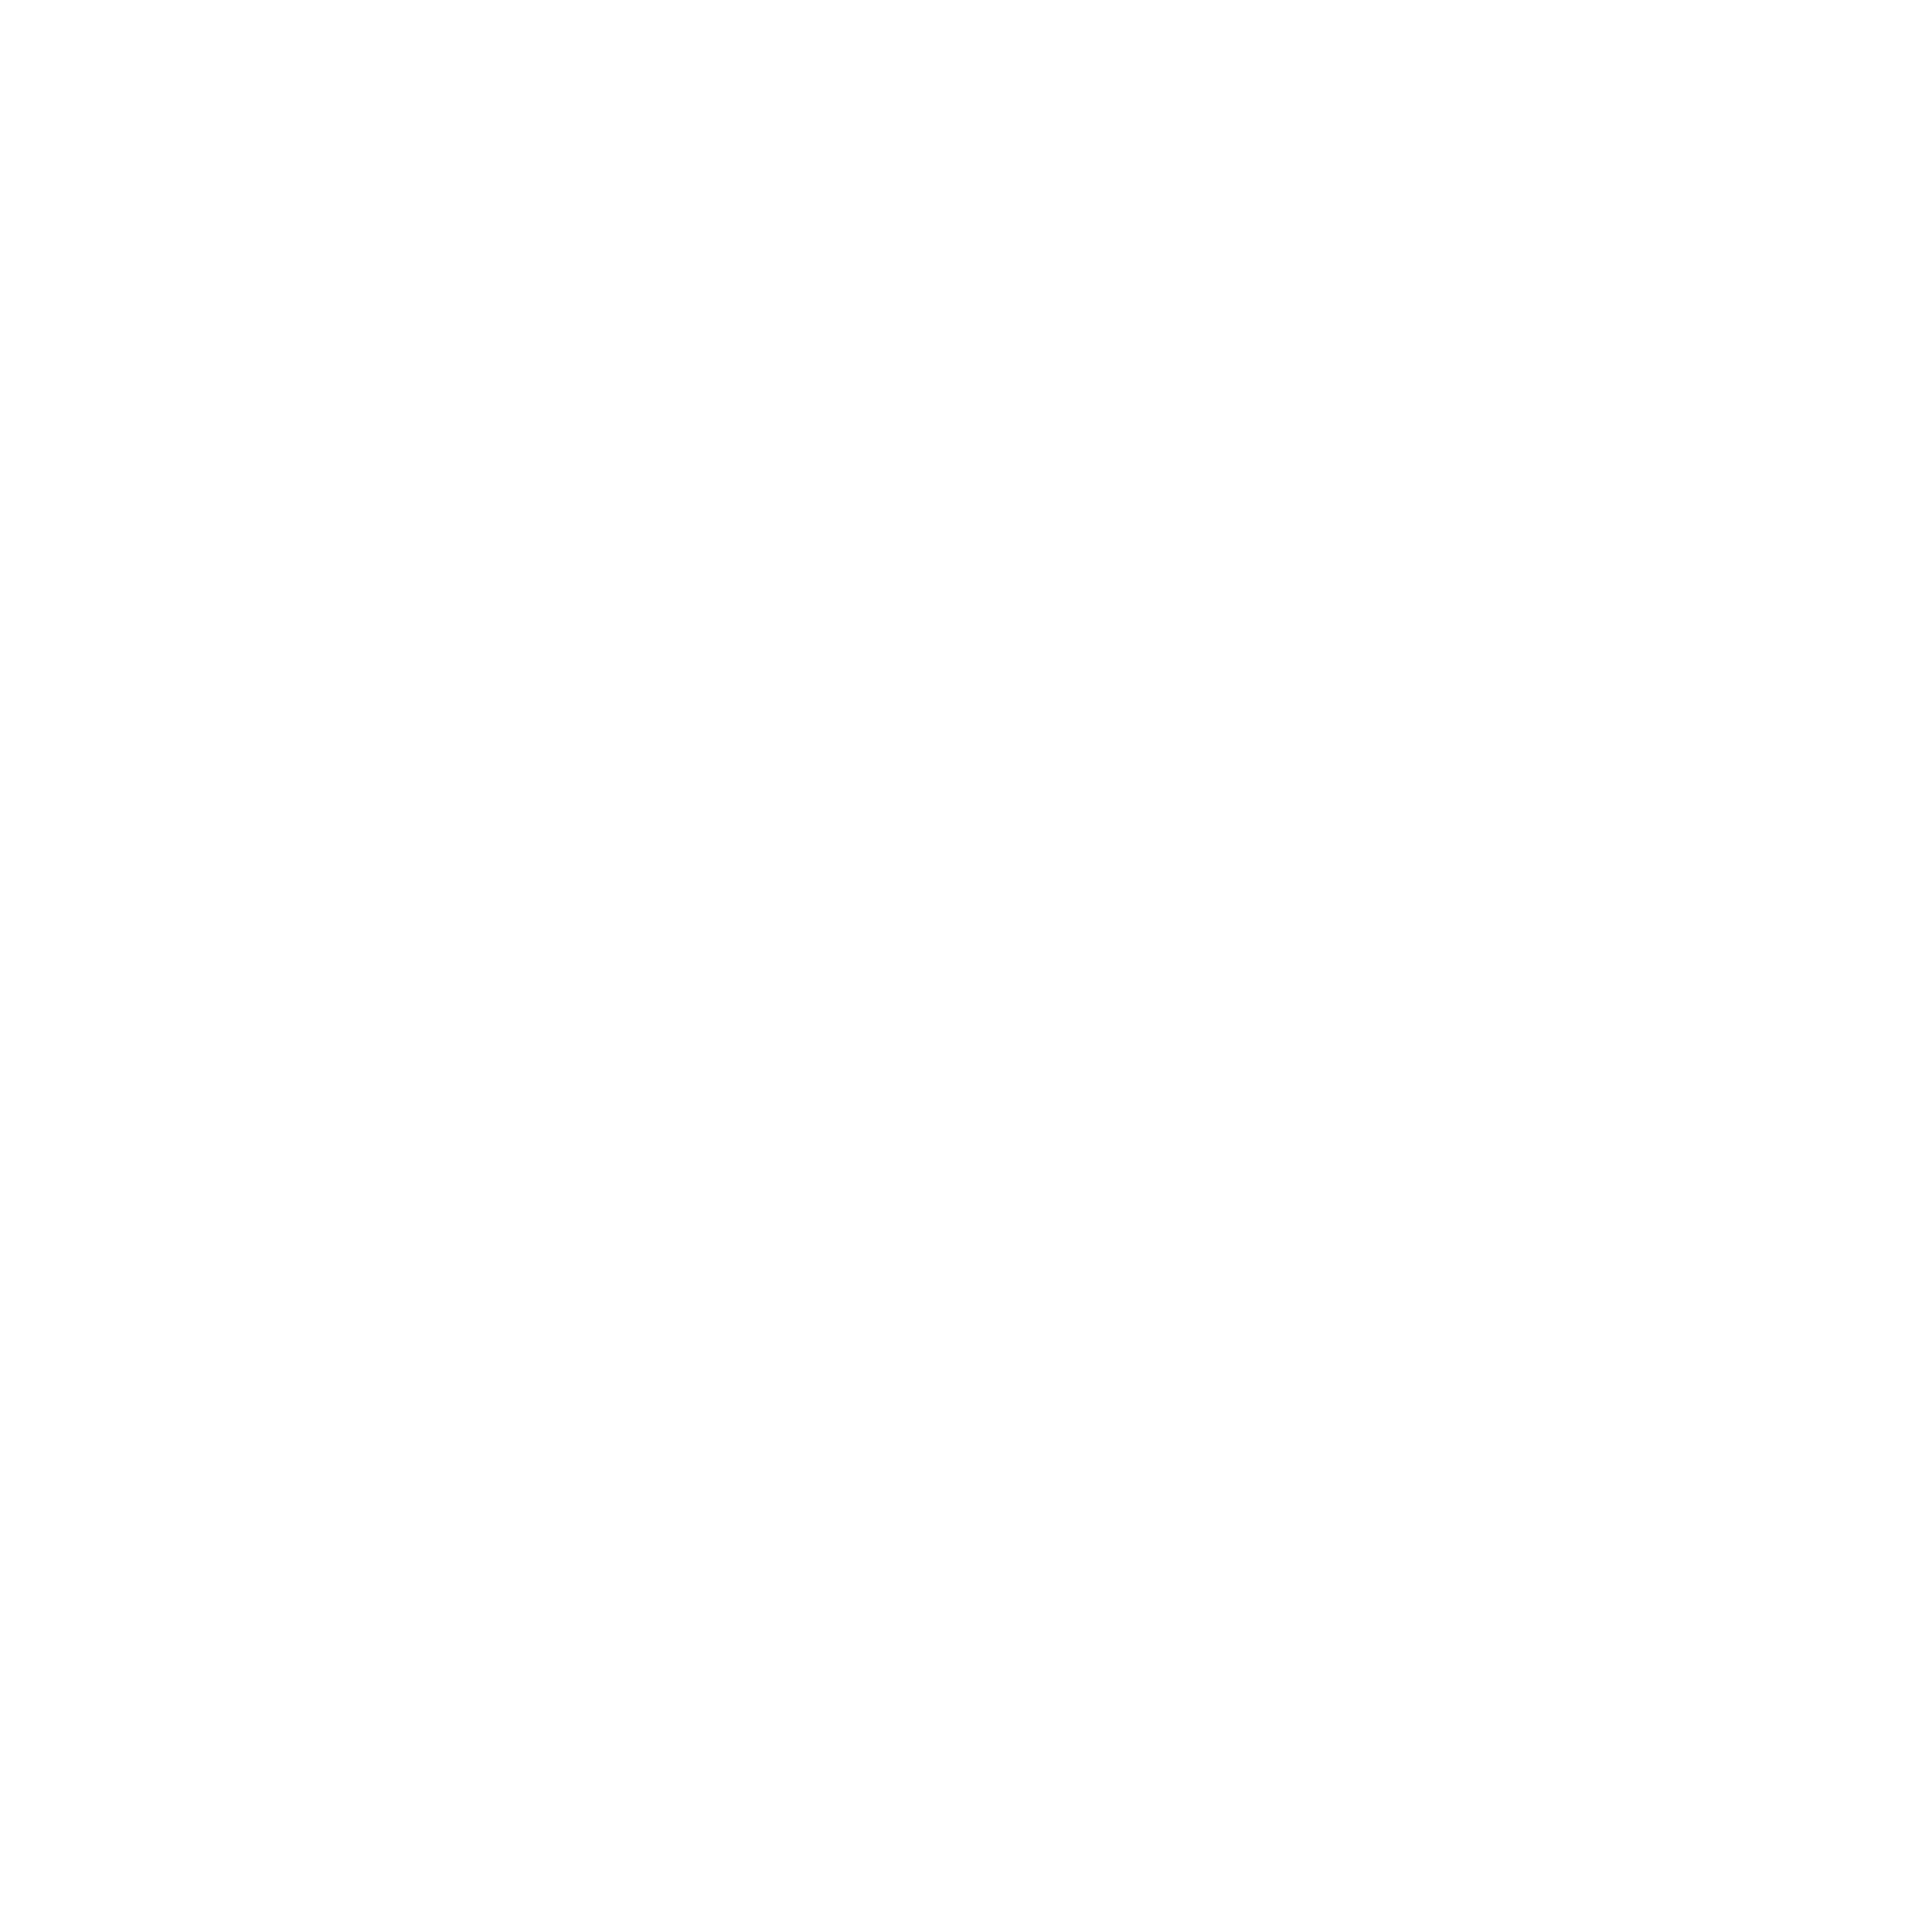 Wicker GovBiz Consulting LLC